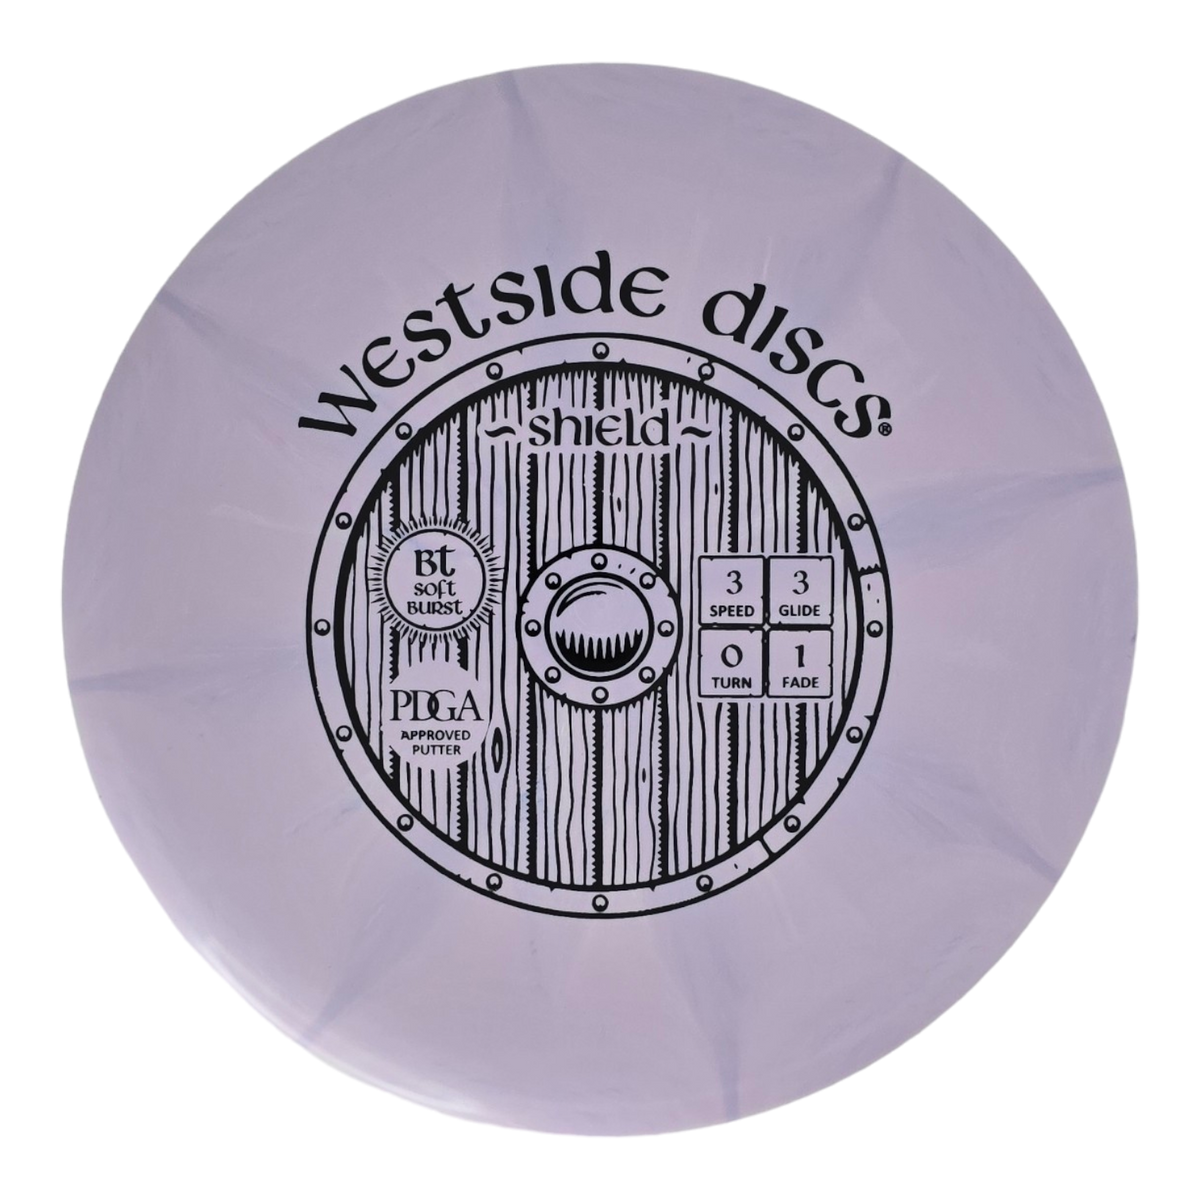 Westside Discs BT Soft Burst Shield